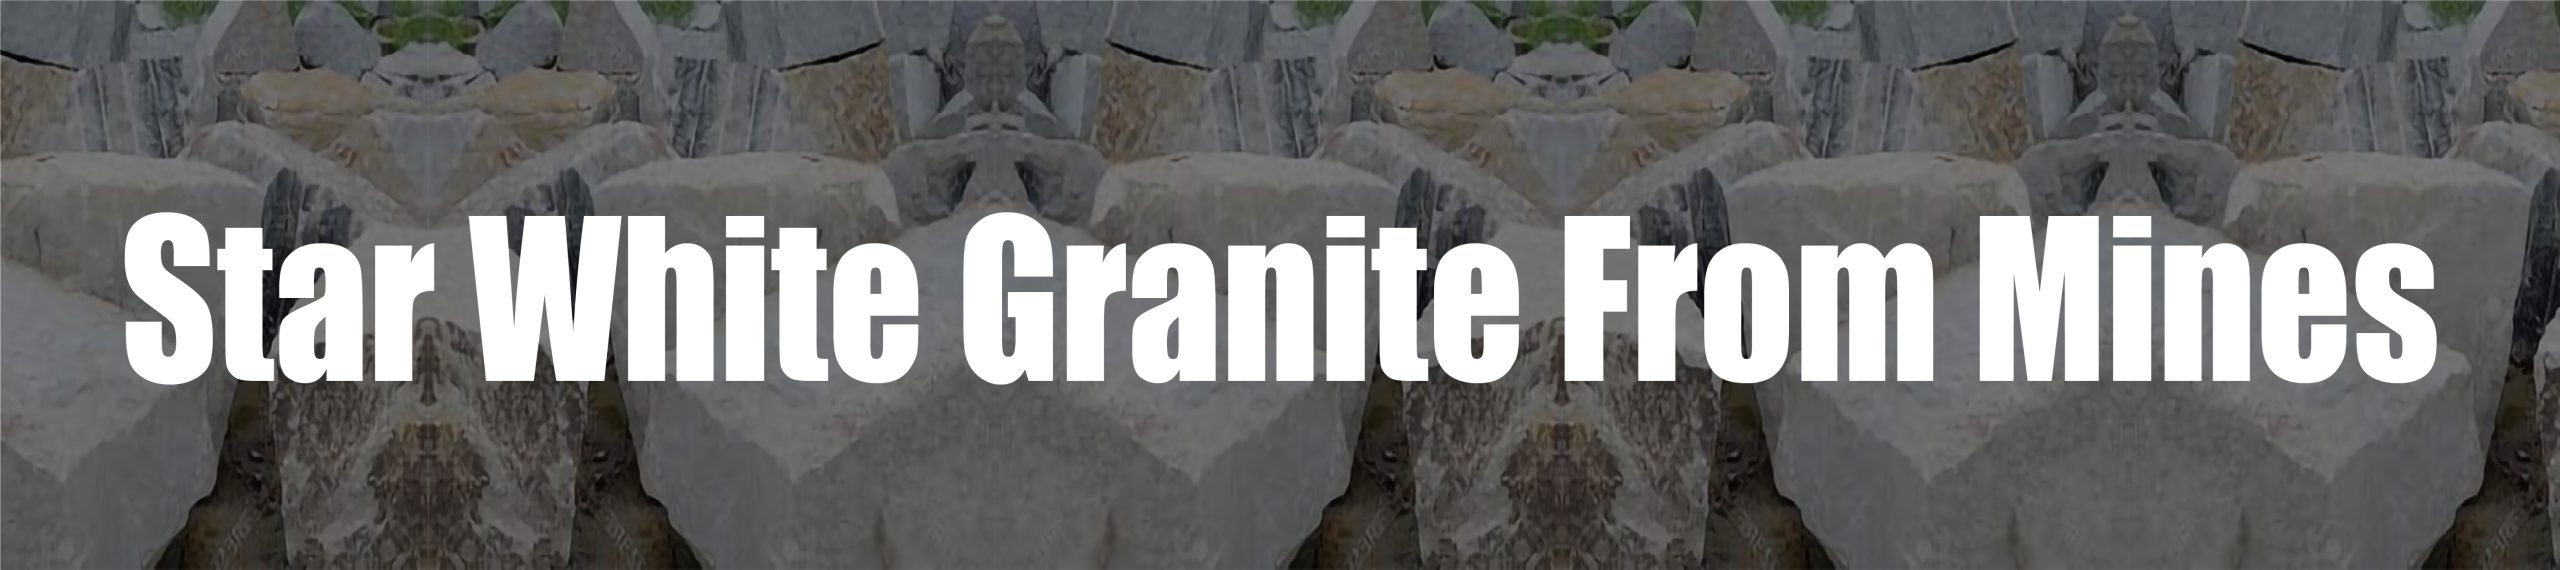 Star White Granite From Pakistan